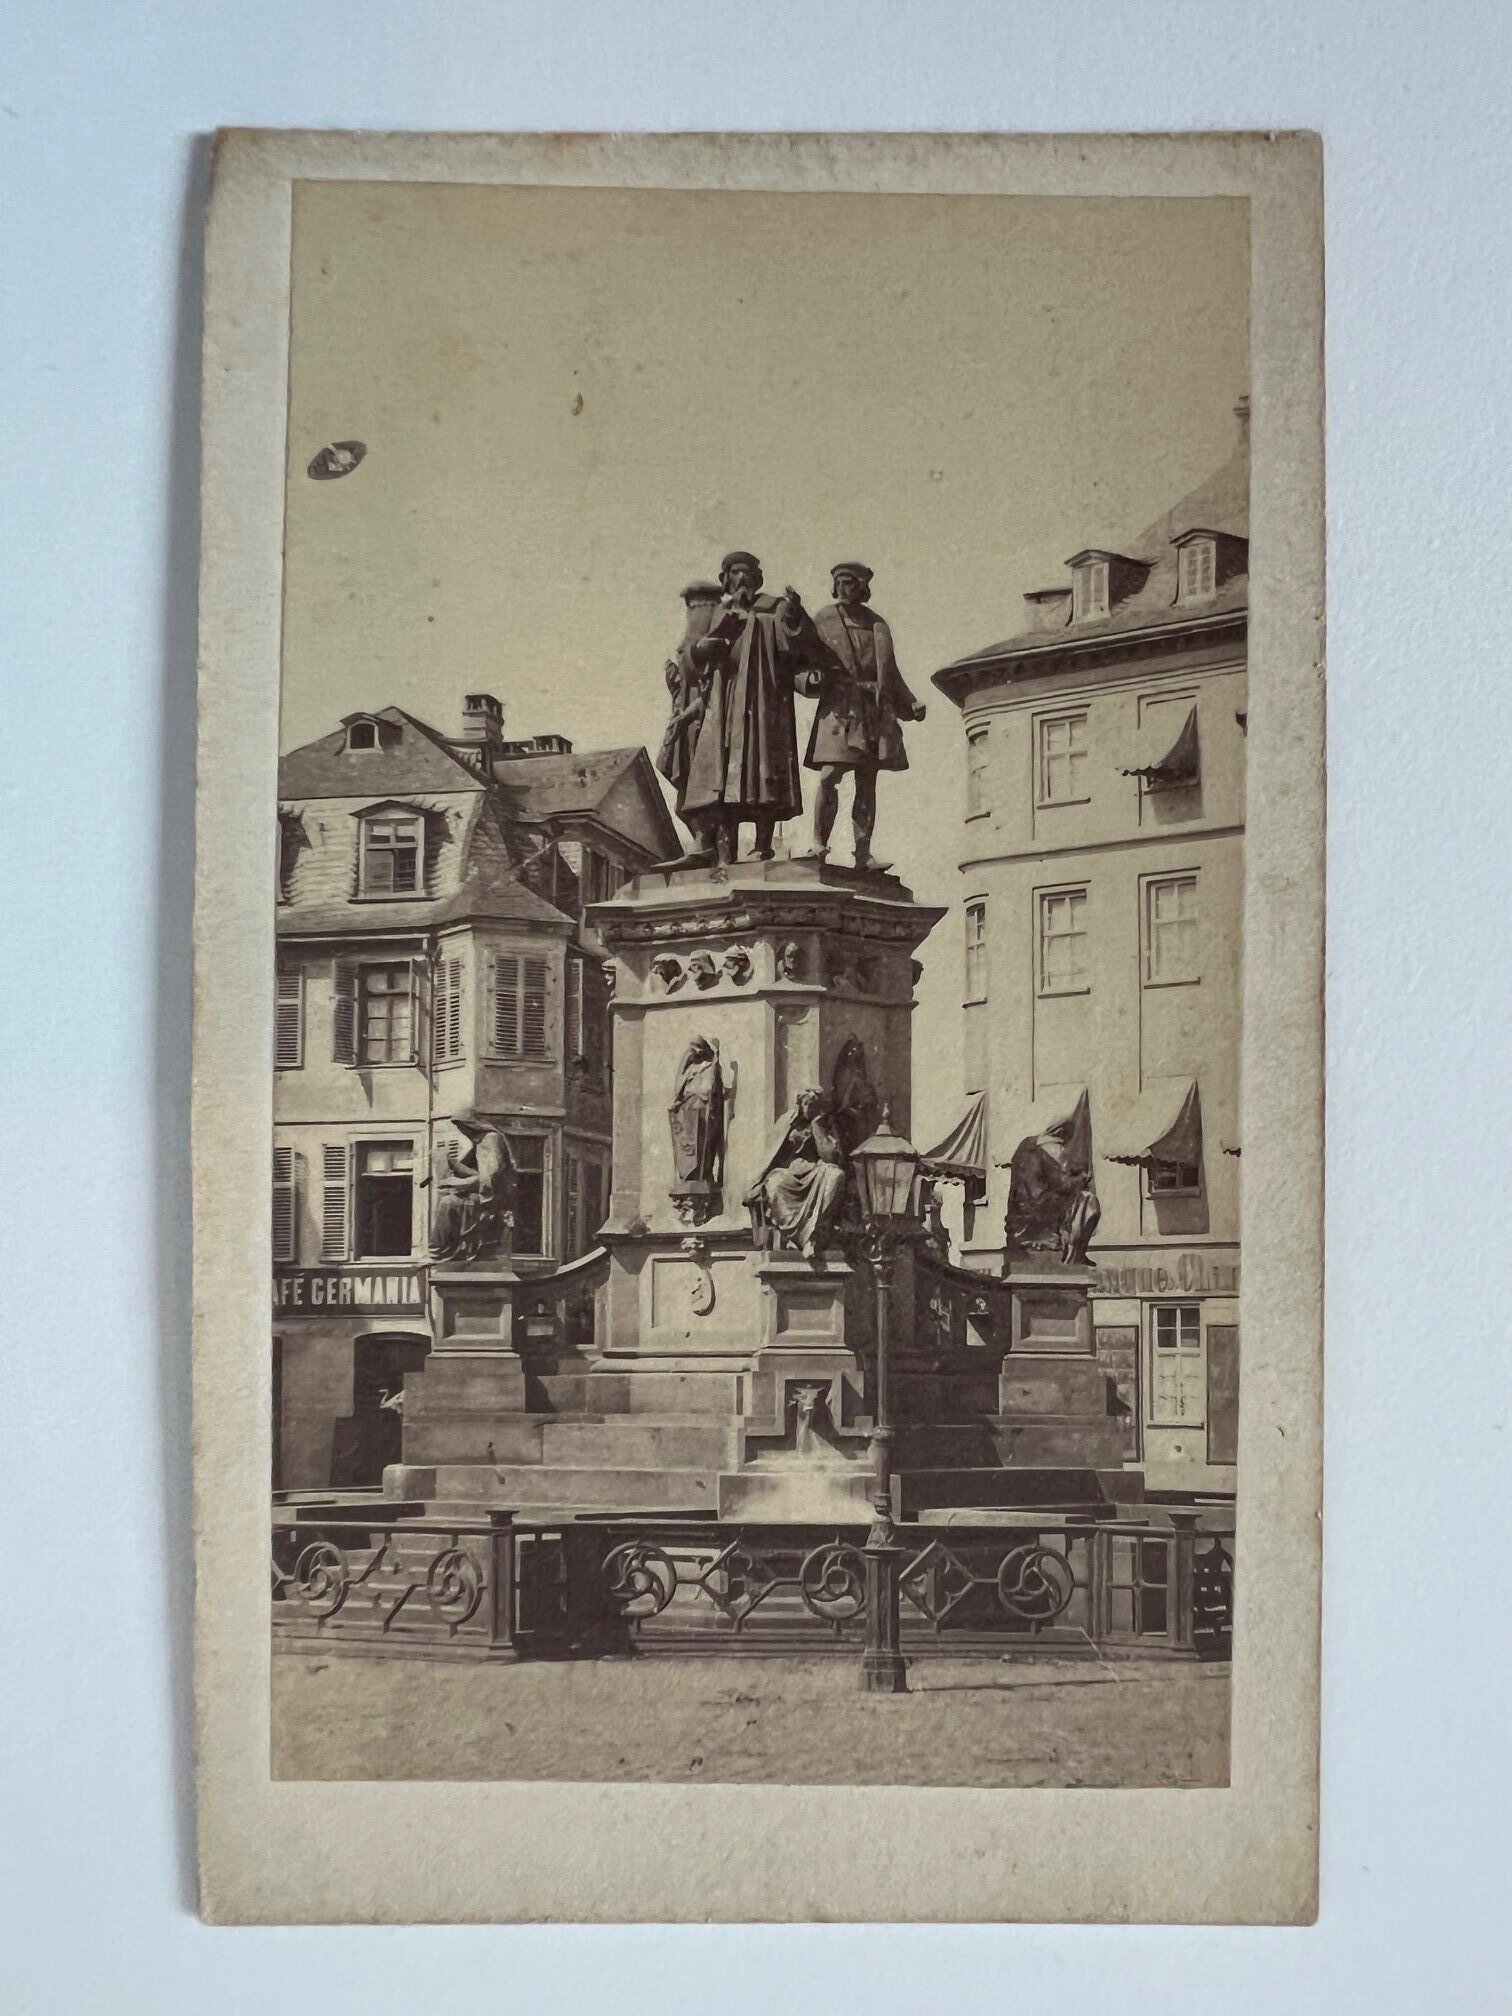 CdV, Unbekannter Fotograf, Frankfurt, Guttenberg-Denkmal, ca. 1865 (Taunus-Rhein-Main - Regionalgeschichtliche Sammlung Dr. Stefan Naas CC BY-NC-SA)